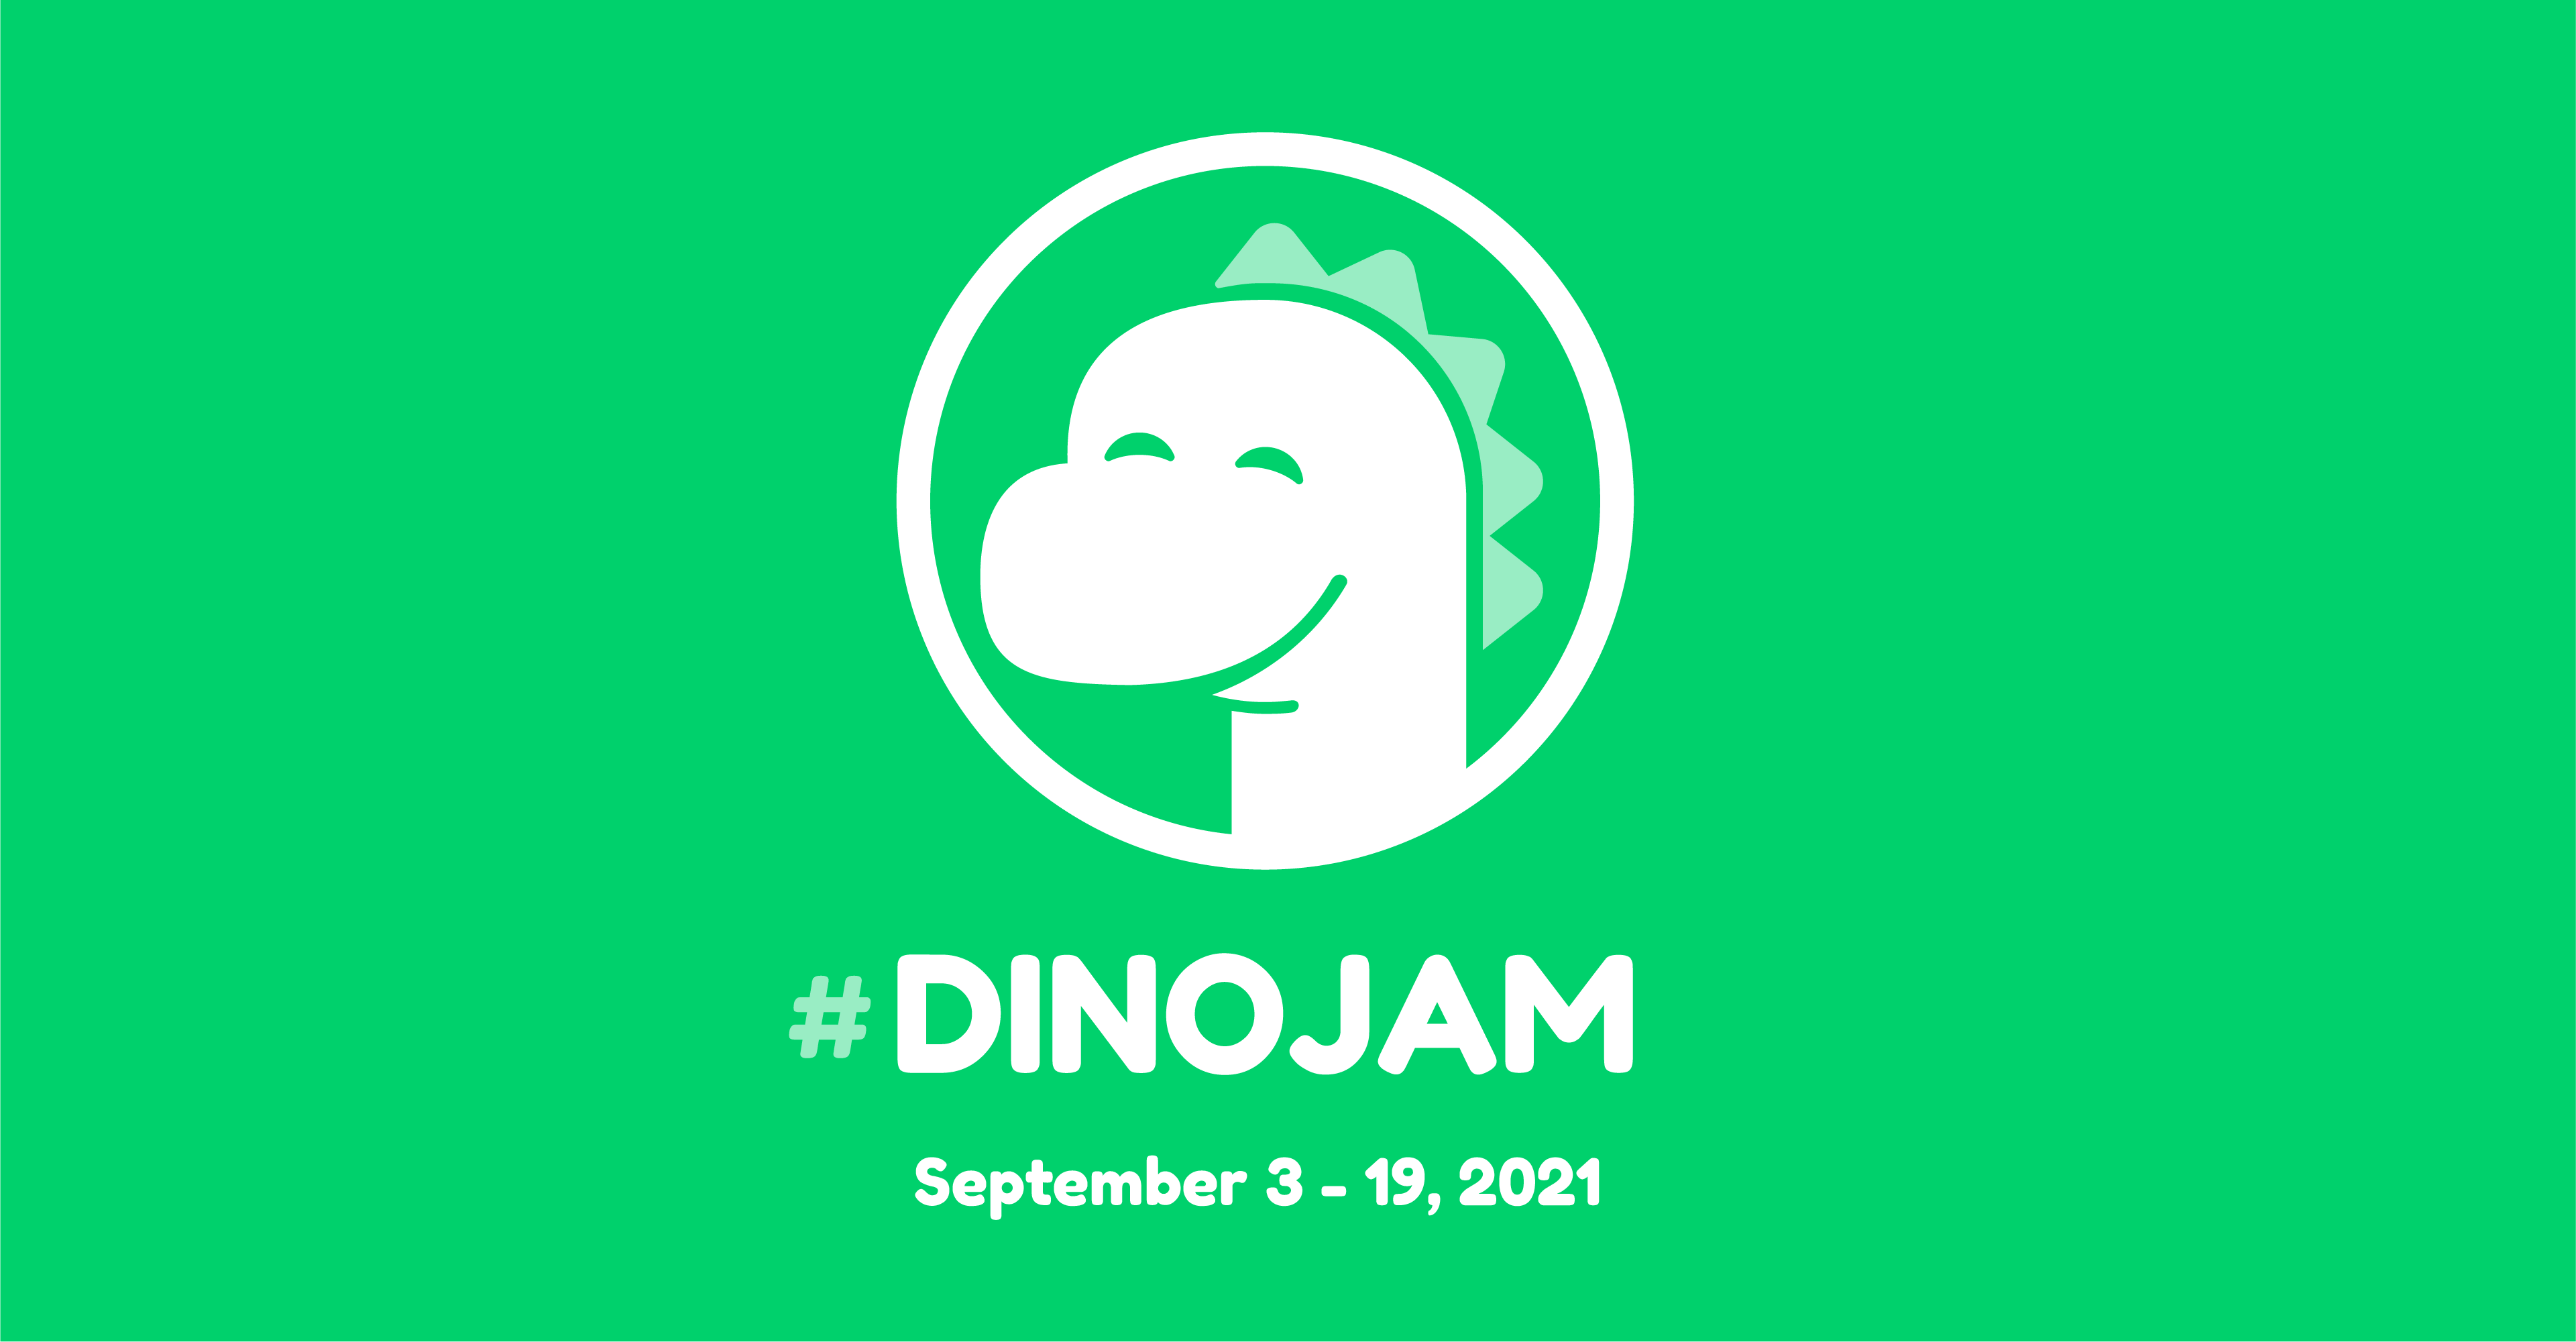 ham jam running dinosaur by ComradeShook on DeviantArt